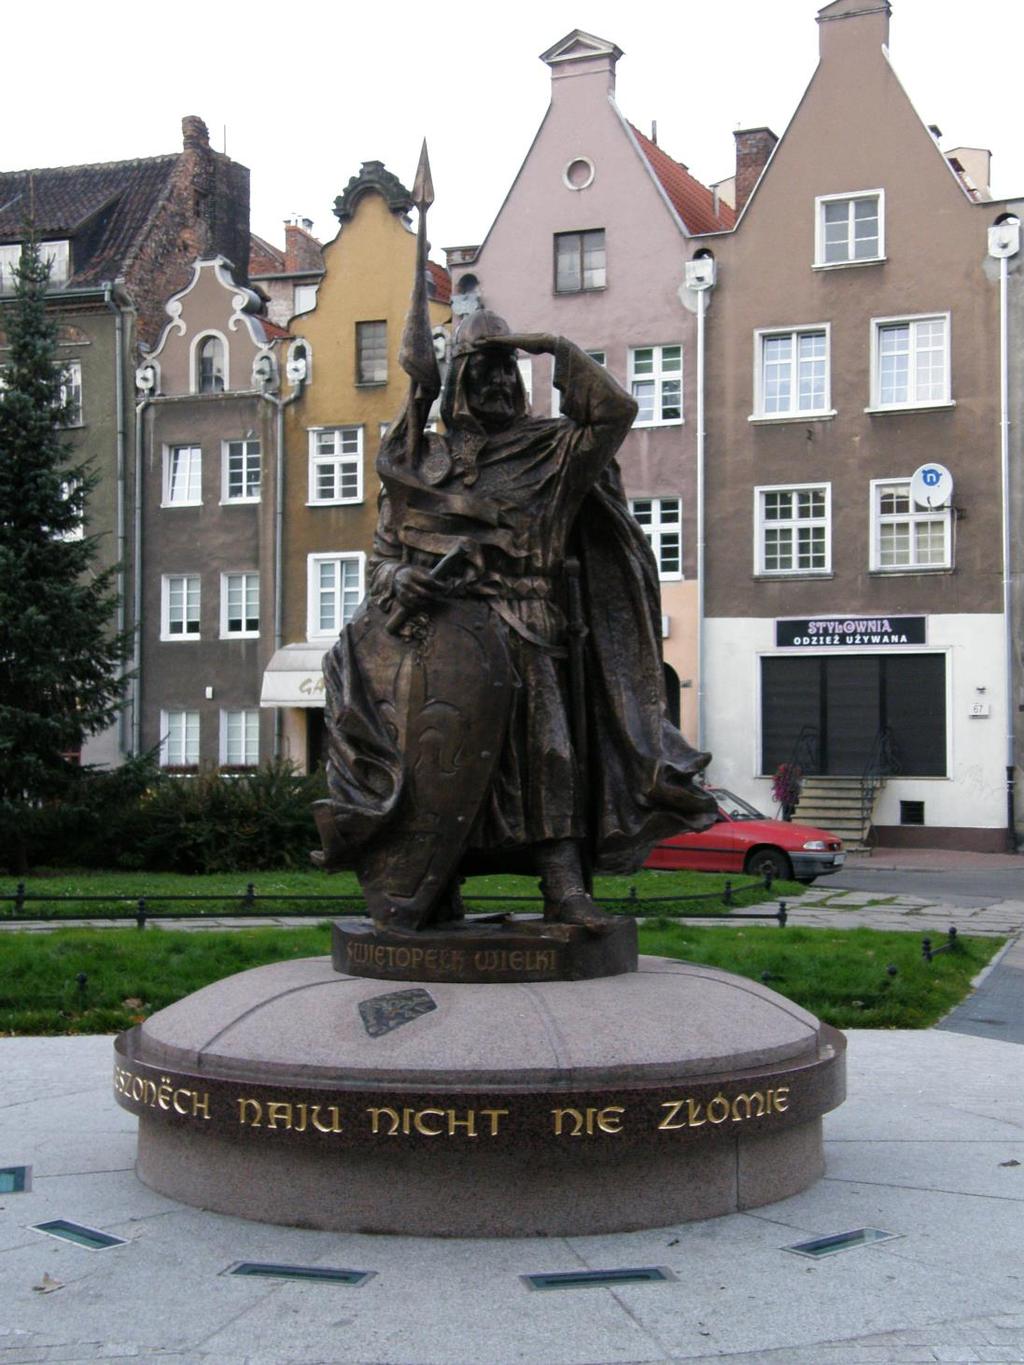 Pomnik Świętopełka II Wielkiego w Gdańsku (fot. A. Hinz) Mściwoj II (ur. ok. 1220 zm. 1294) był najstarszym dzieckiem Świętopełka II Wielkiego i Eufrozyny. W 1243 r.